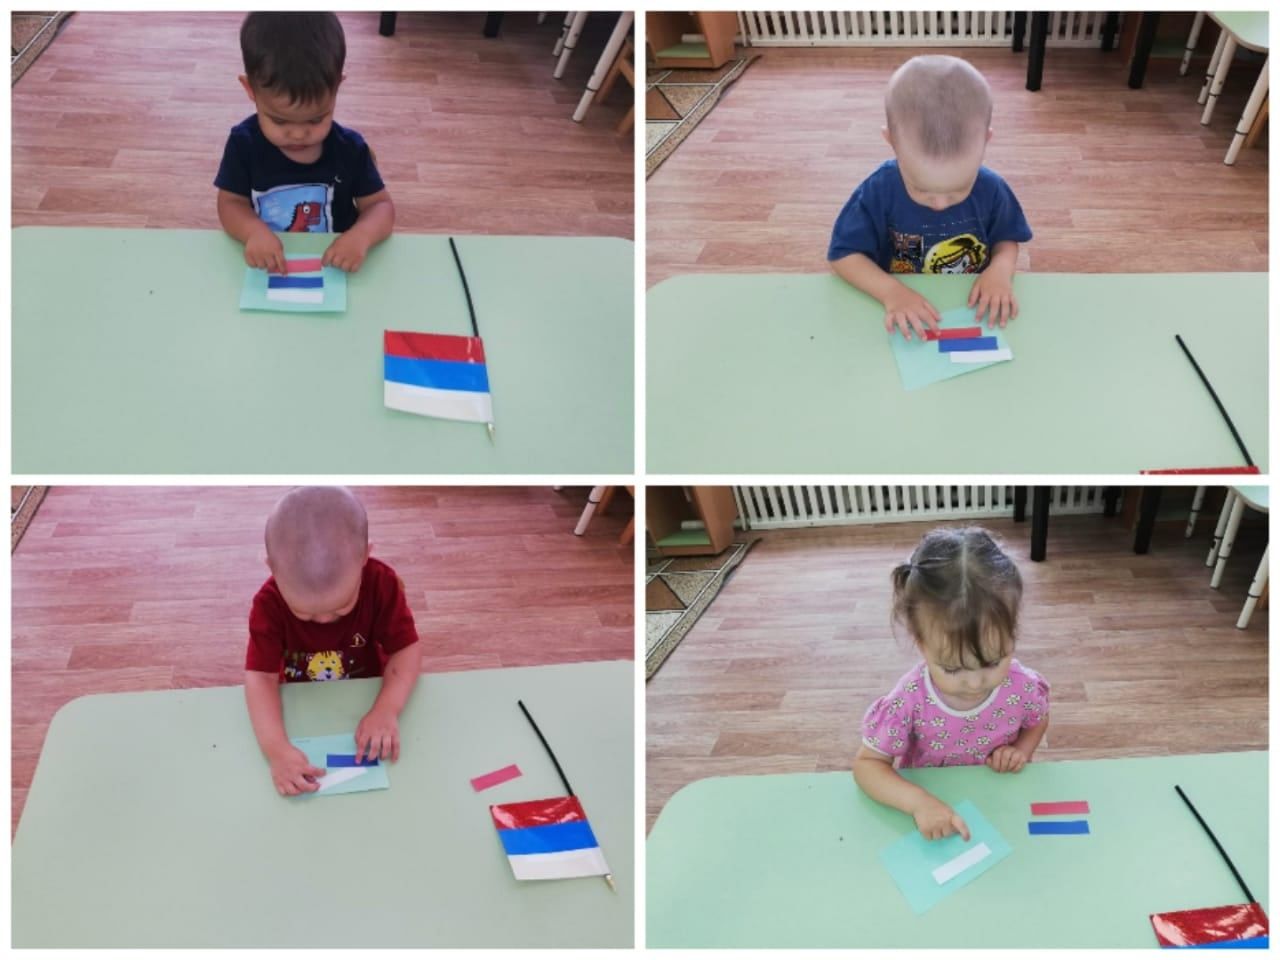 Сарман балалары Россиядә Дәүләт флагы көнен билгеләп үттеләр